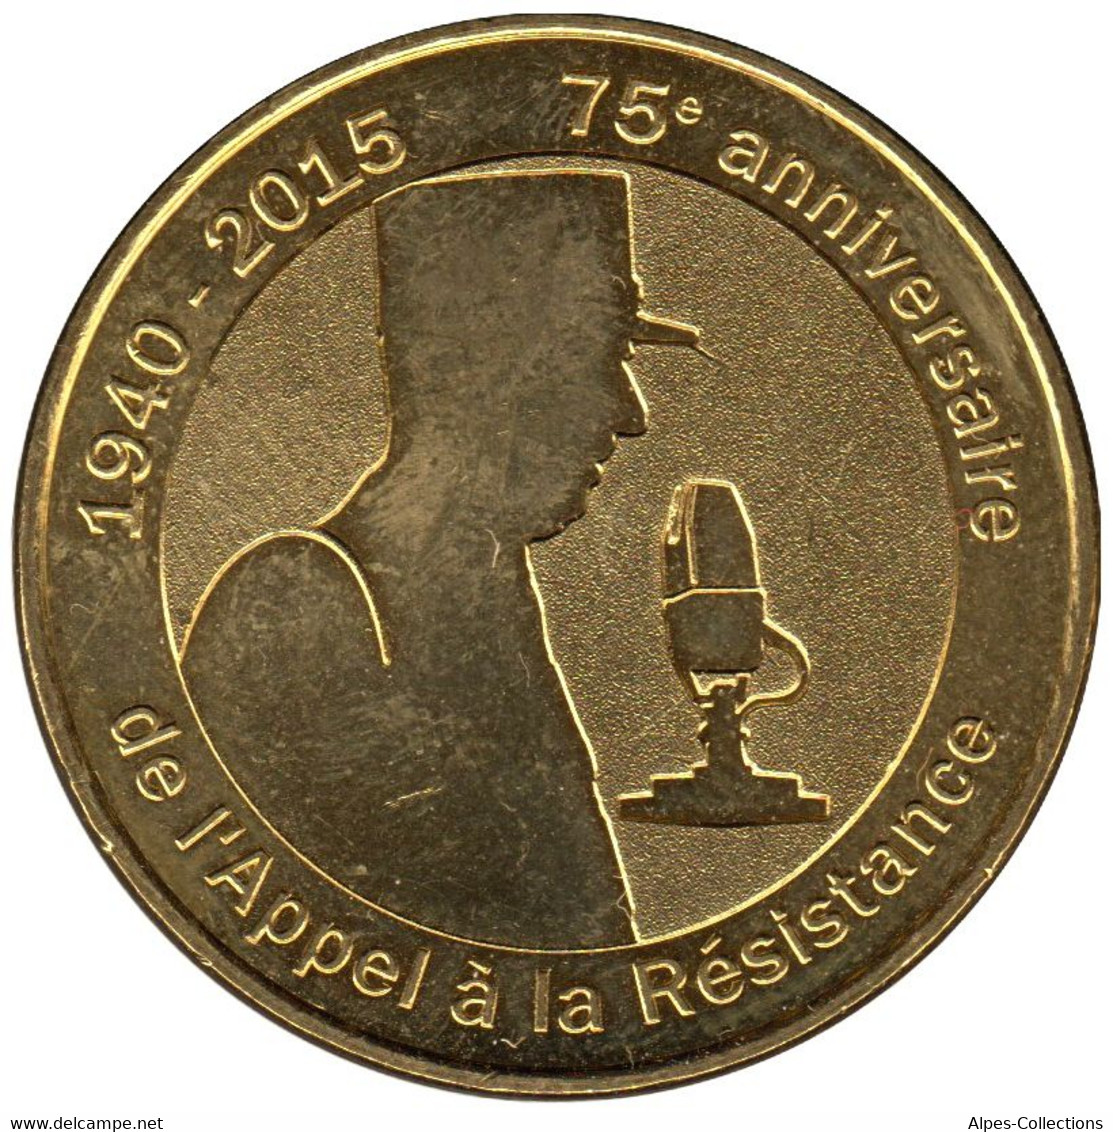 52-2093 - JETON TOURISTIQUE MDP - 75e Anniv. De L'Appel à La Résistance - 2015.4 - 2015